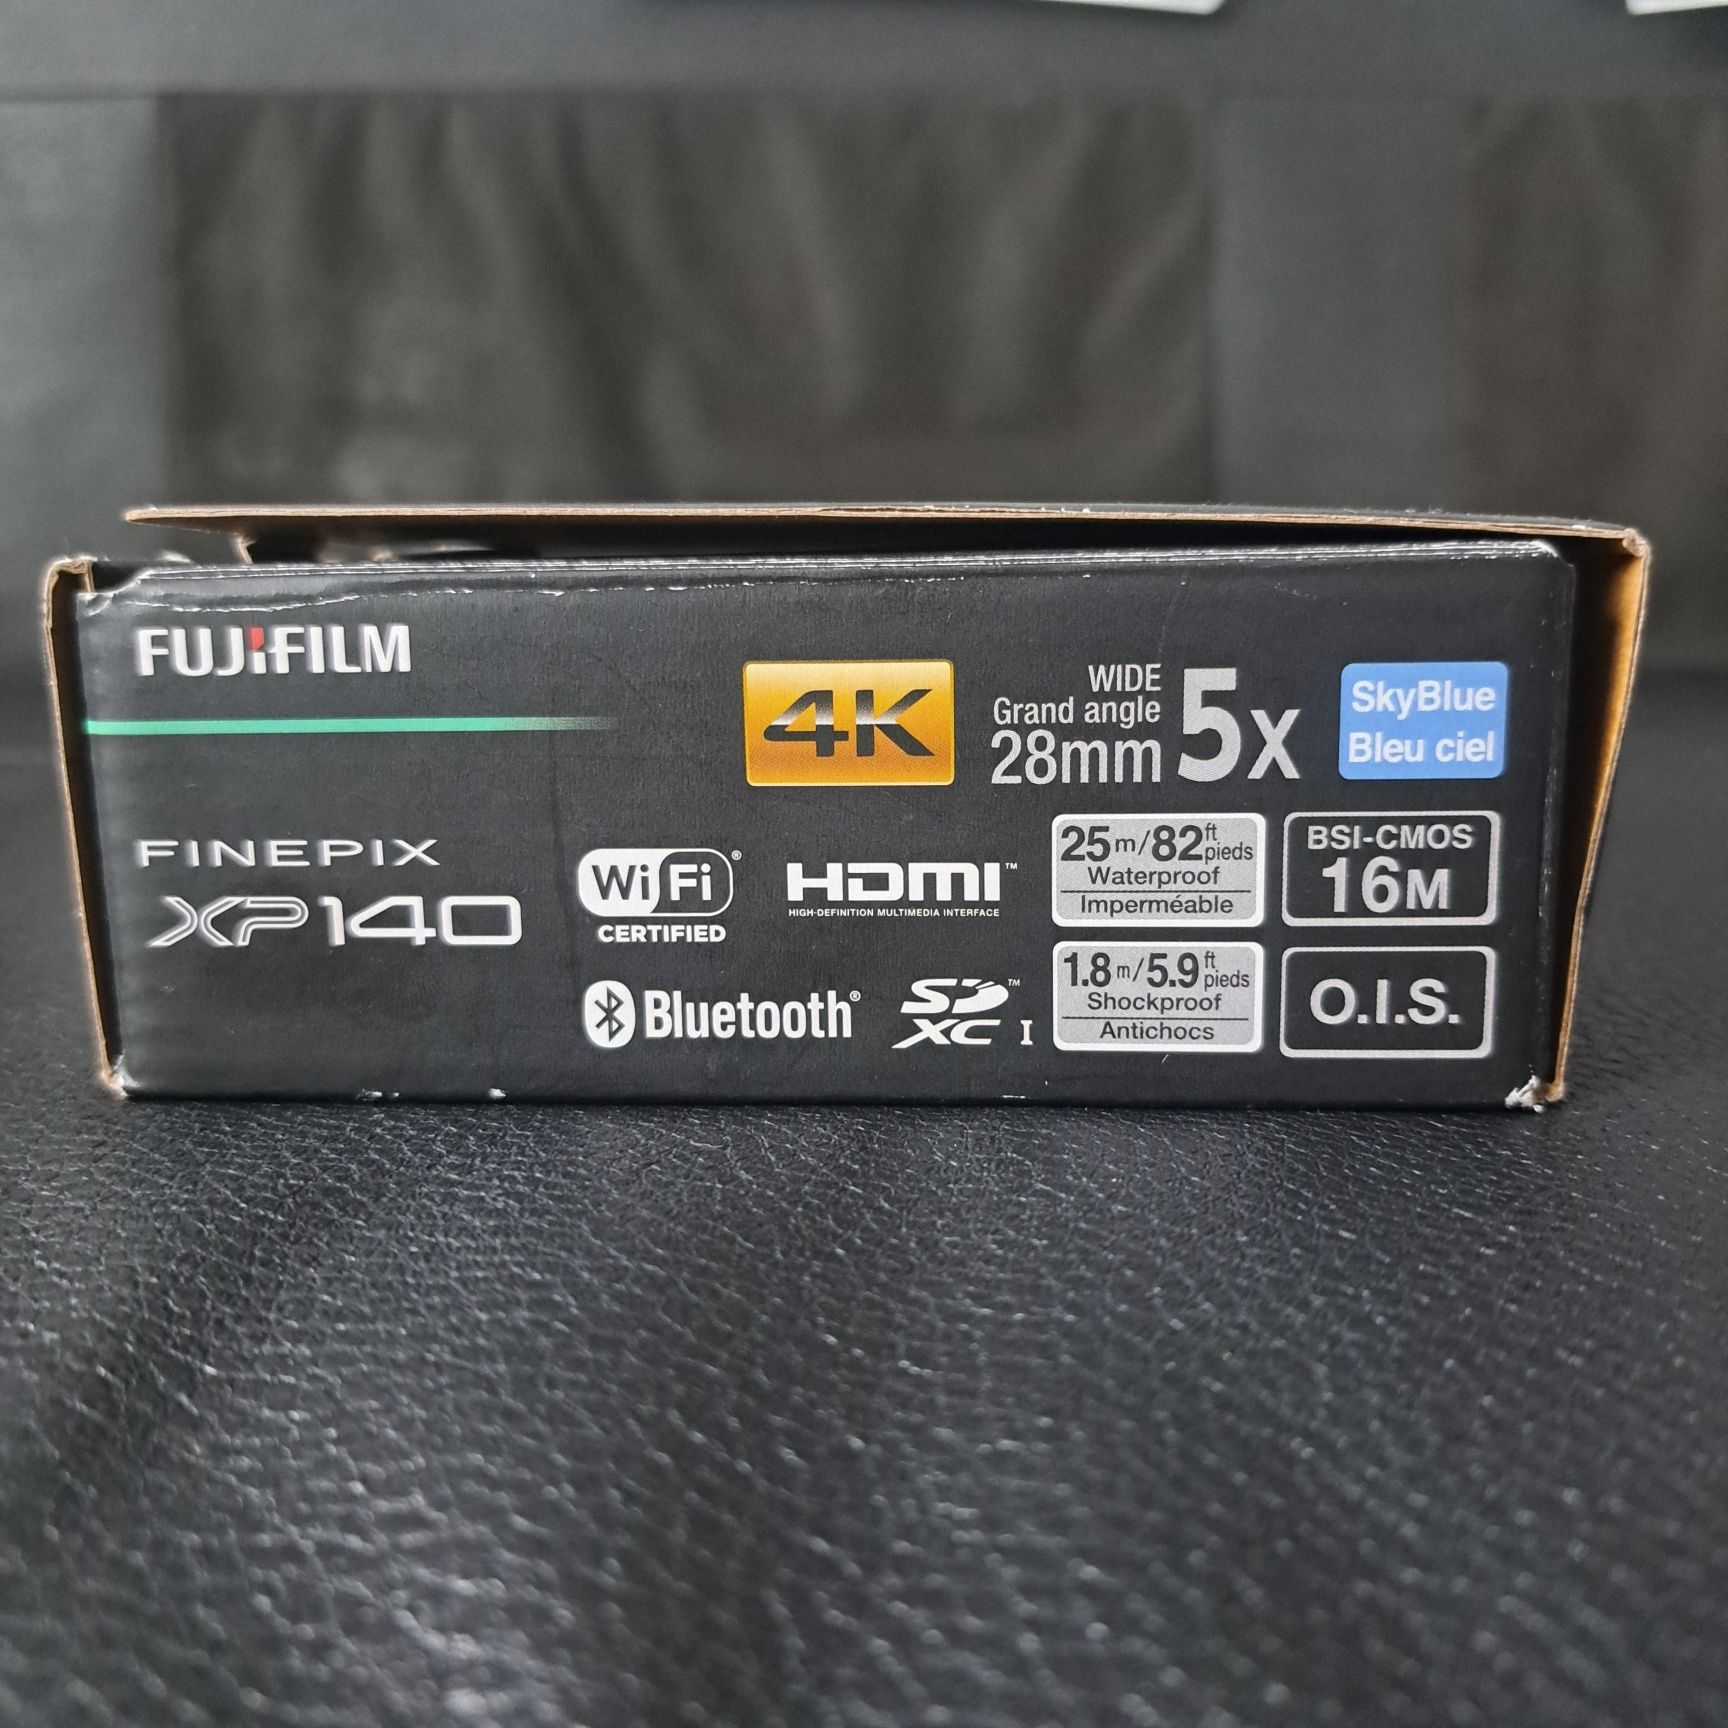 Aparat wodoodporny Fujifilm finepix xp140 4K, 25metrów pod wodą, Wi-fi